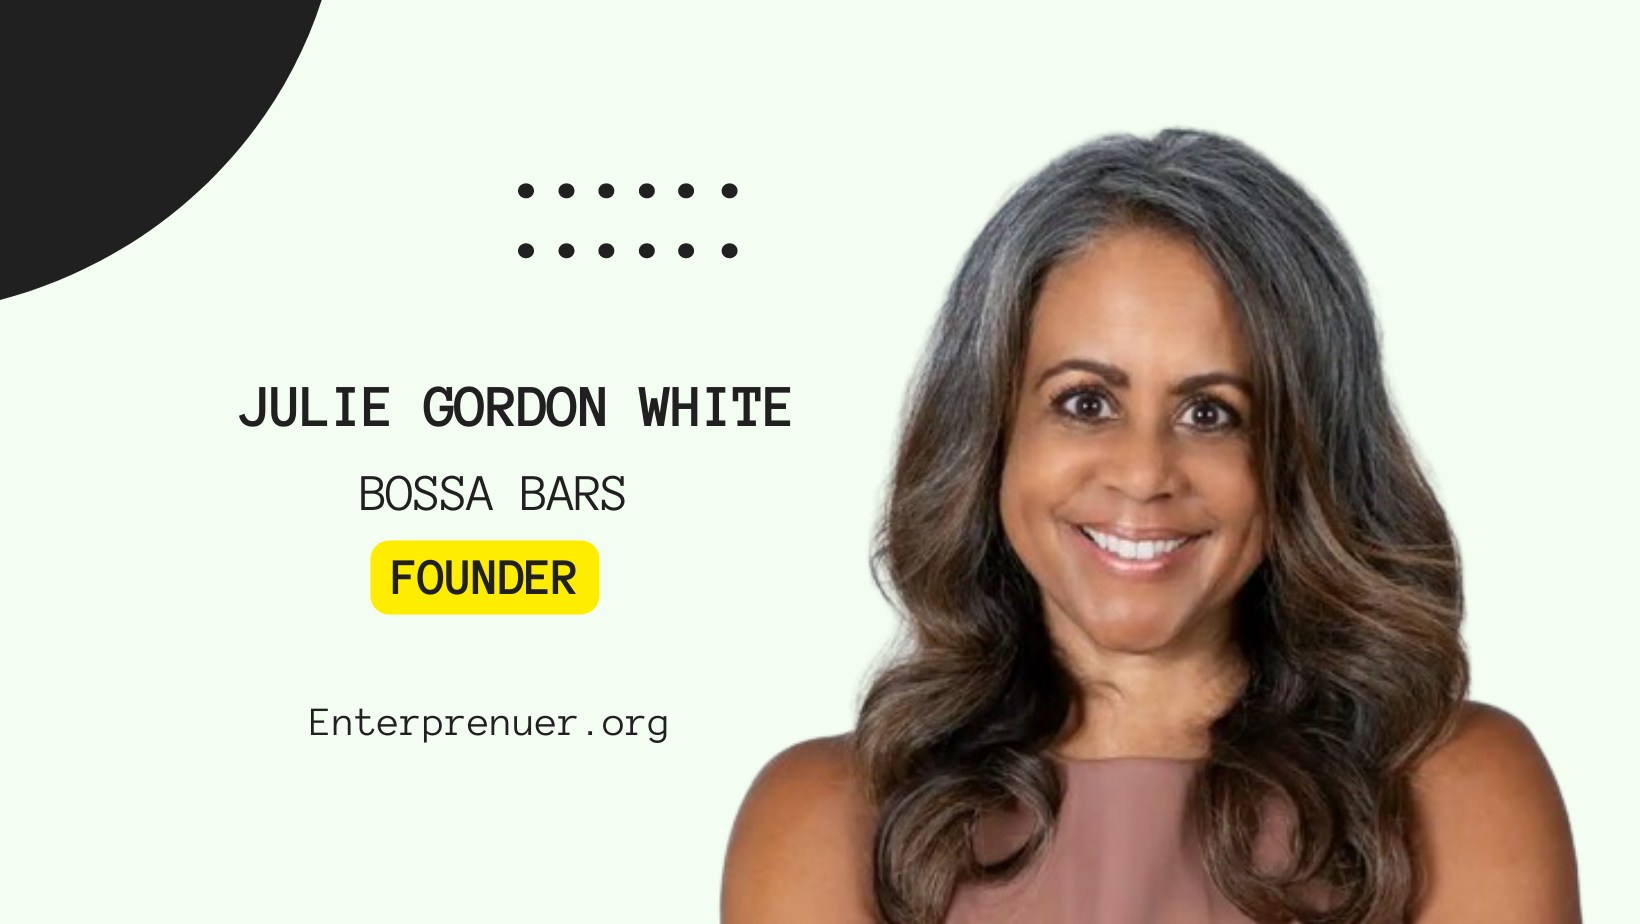 Julie Gordon White Founder of Bossa Bars